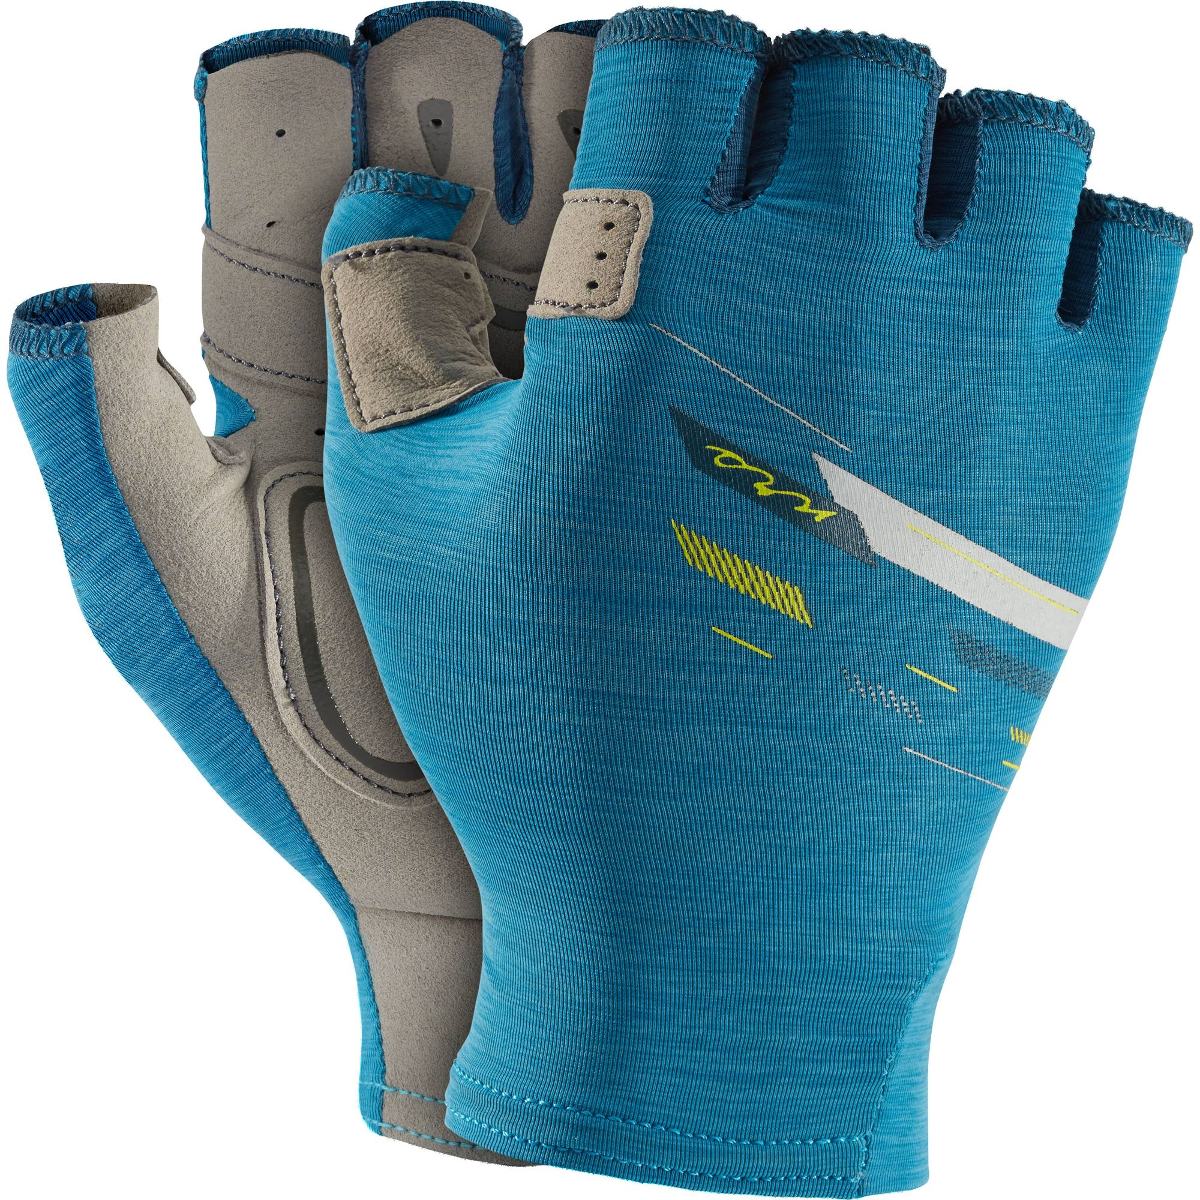 NRS Boater Gloves, Women's